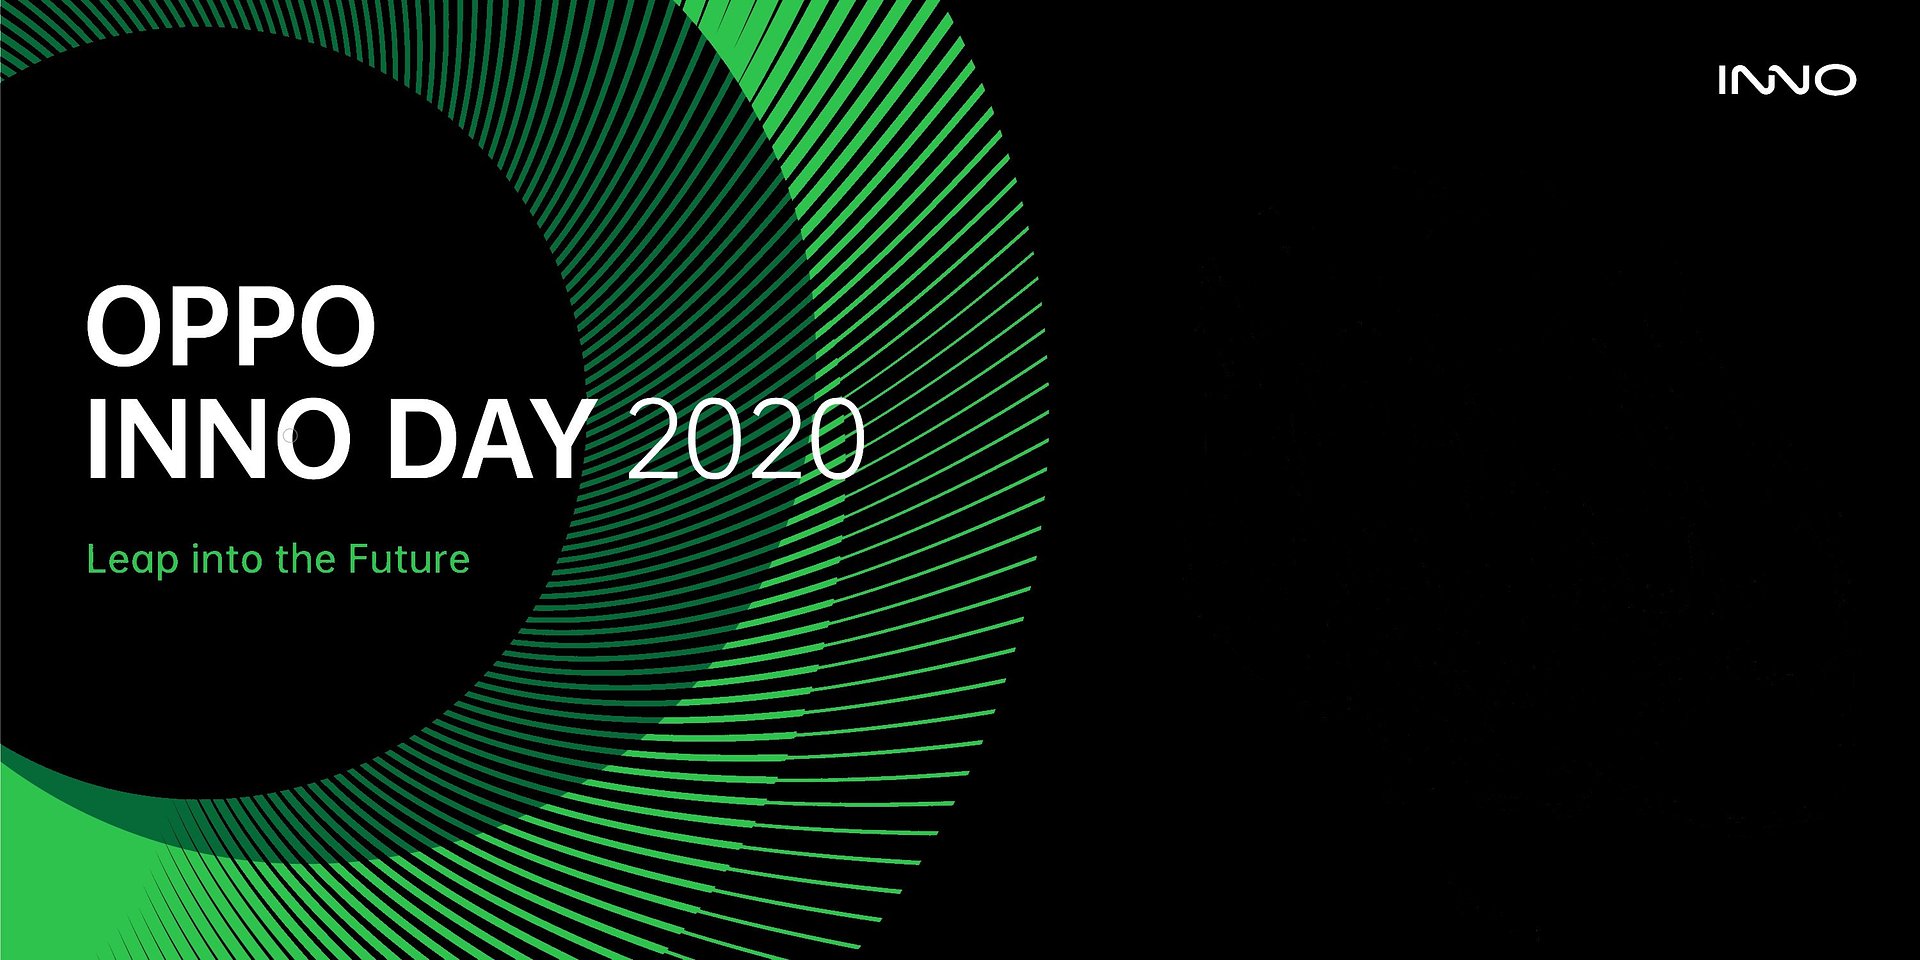 OPPO podczas INNO DAY 2020 przedstawiło 3 nowe koncepty produktowe będące ucieleśnieniem wizji producenta na temat zintegrowanej przyszłości